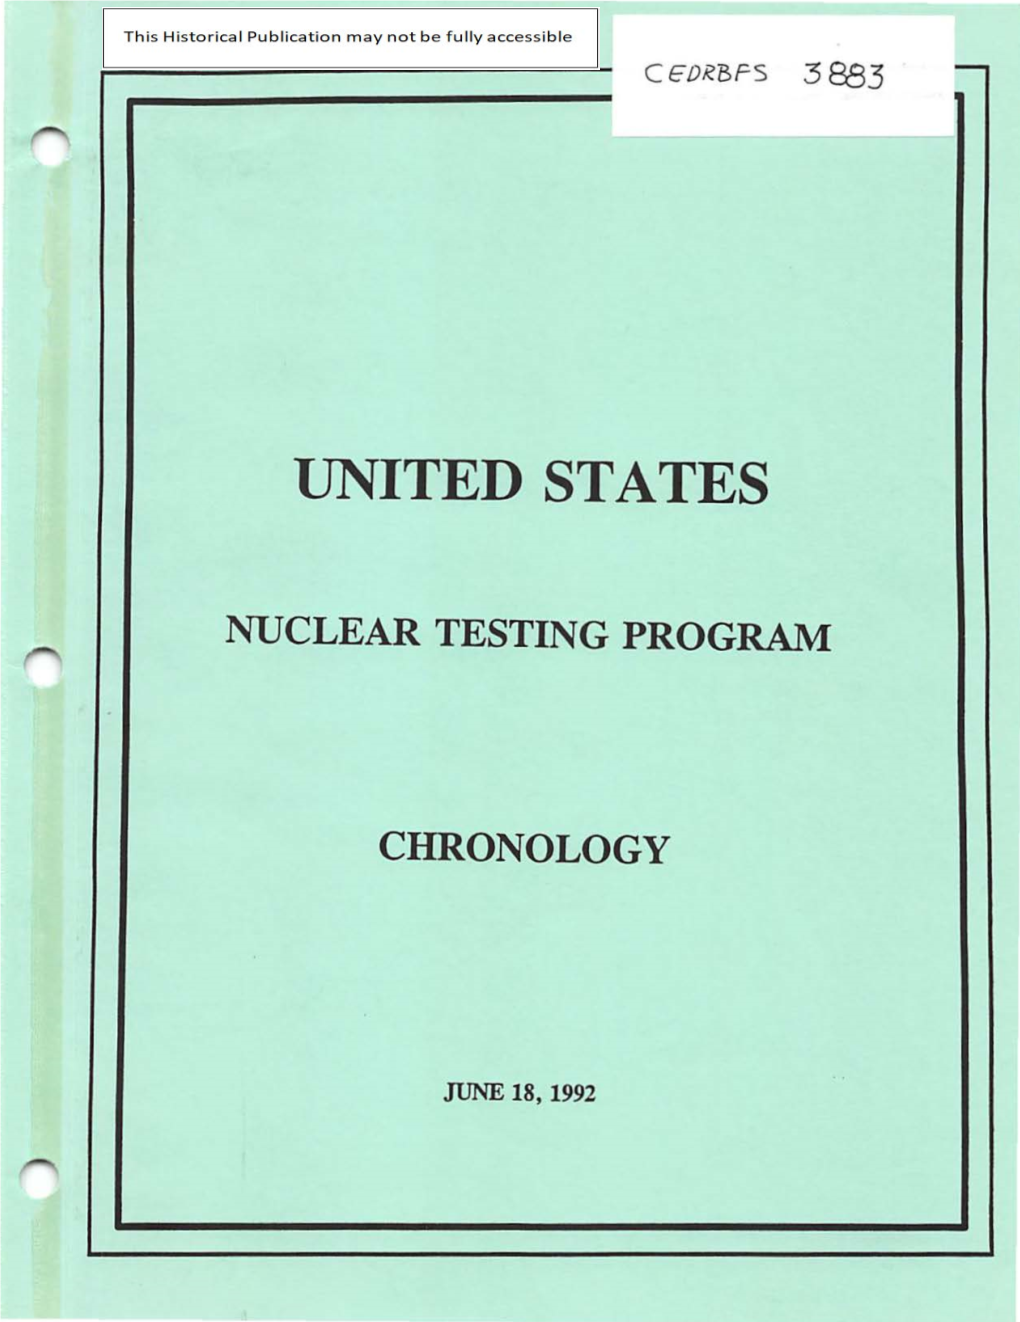 United States Nuclear Testing Program Chronology